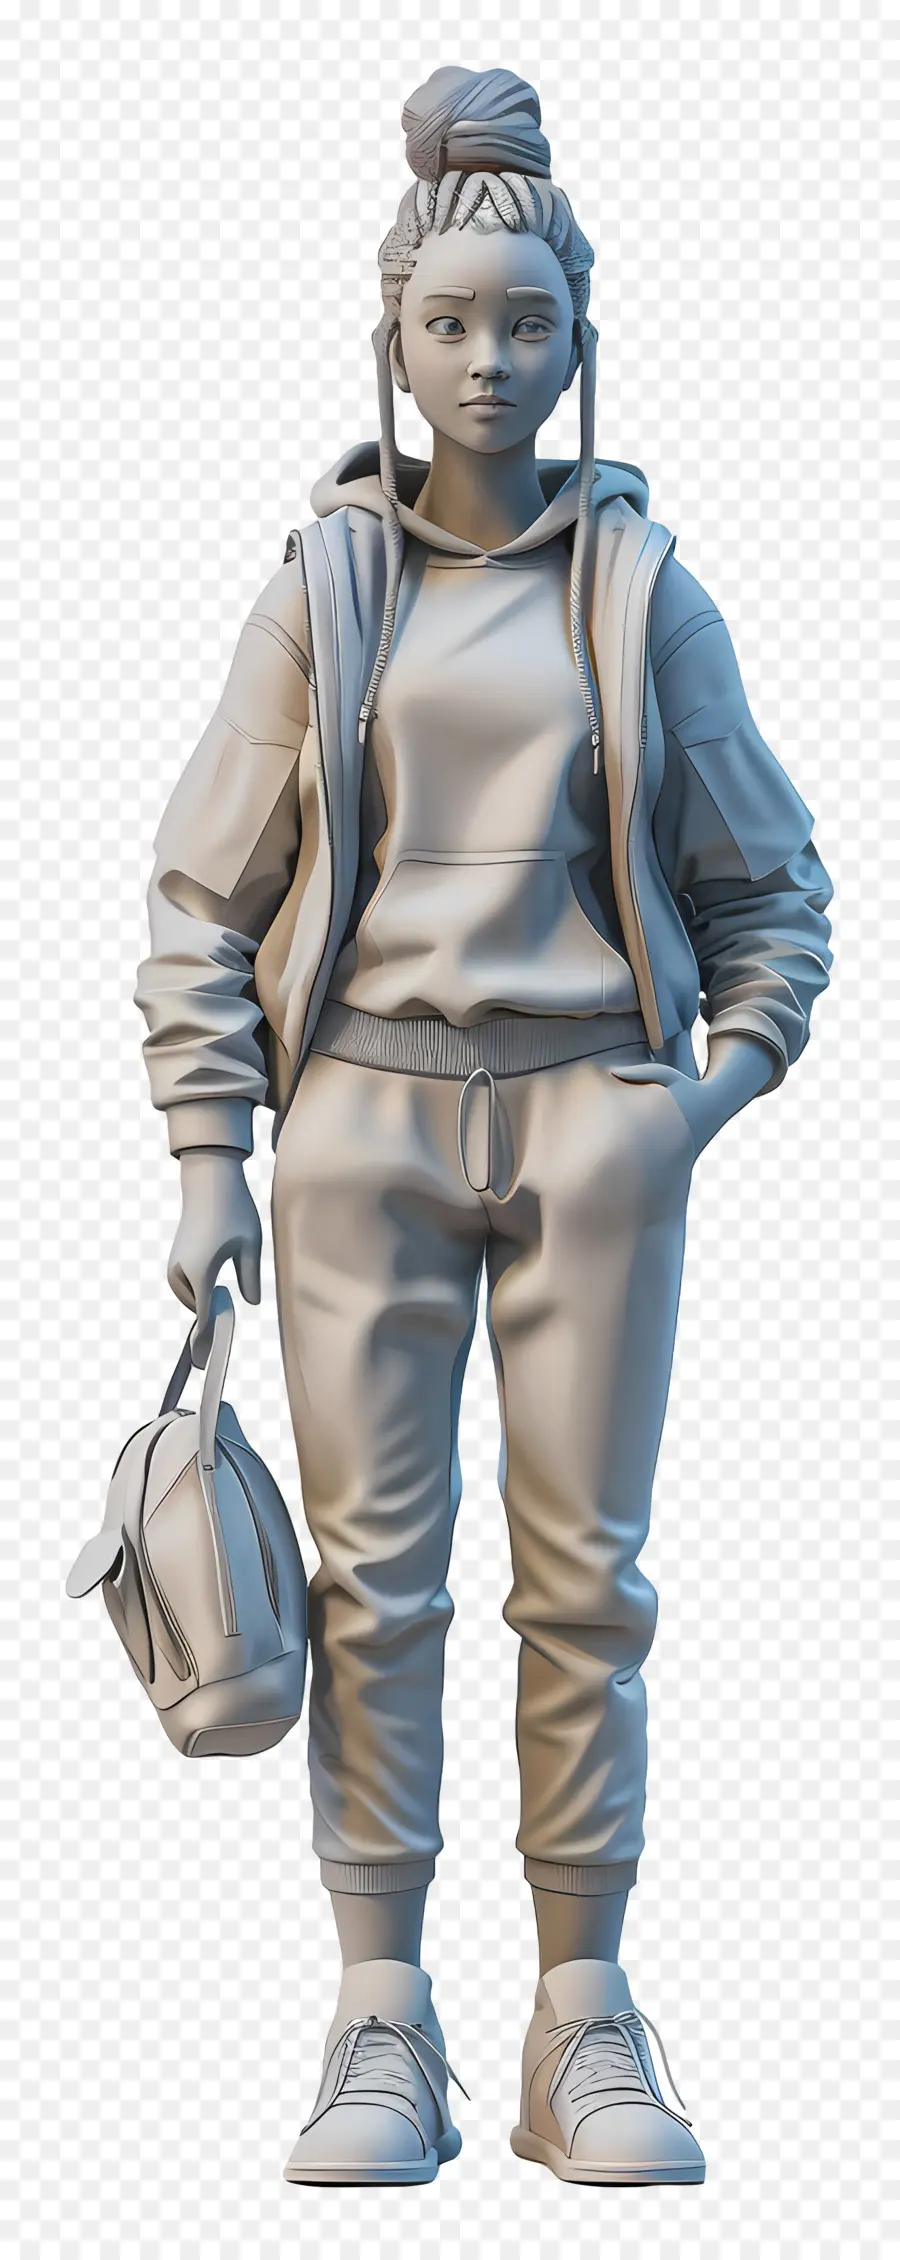 Nữ Hình 3D kết xuất người trang phục thông thường - Kết xuất 3D của người bình thường với túi